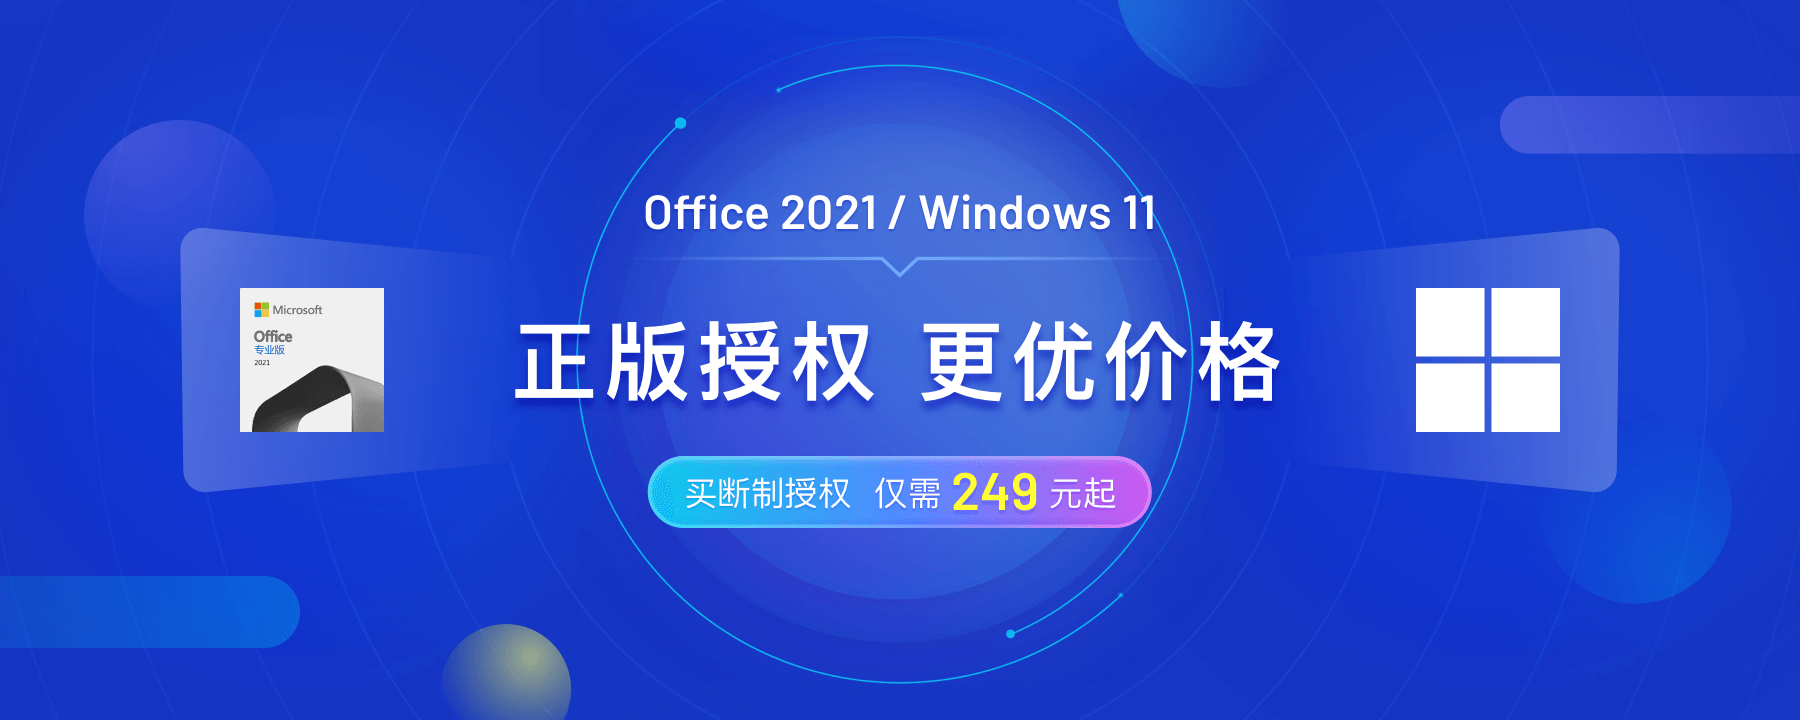 远低官网价！正版 Office 2021、Windows 11 上架优惠-文武科技柜